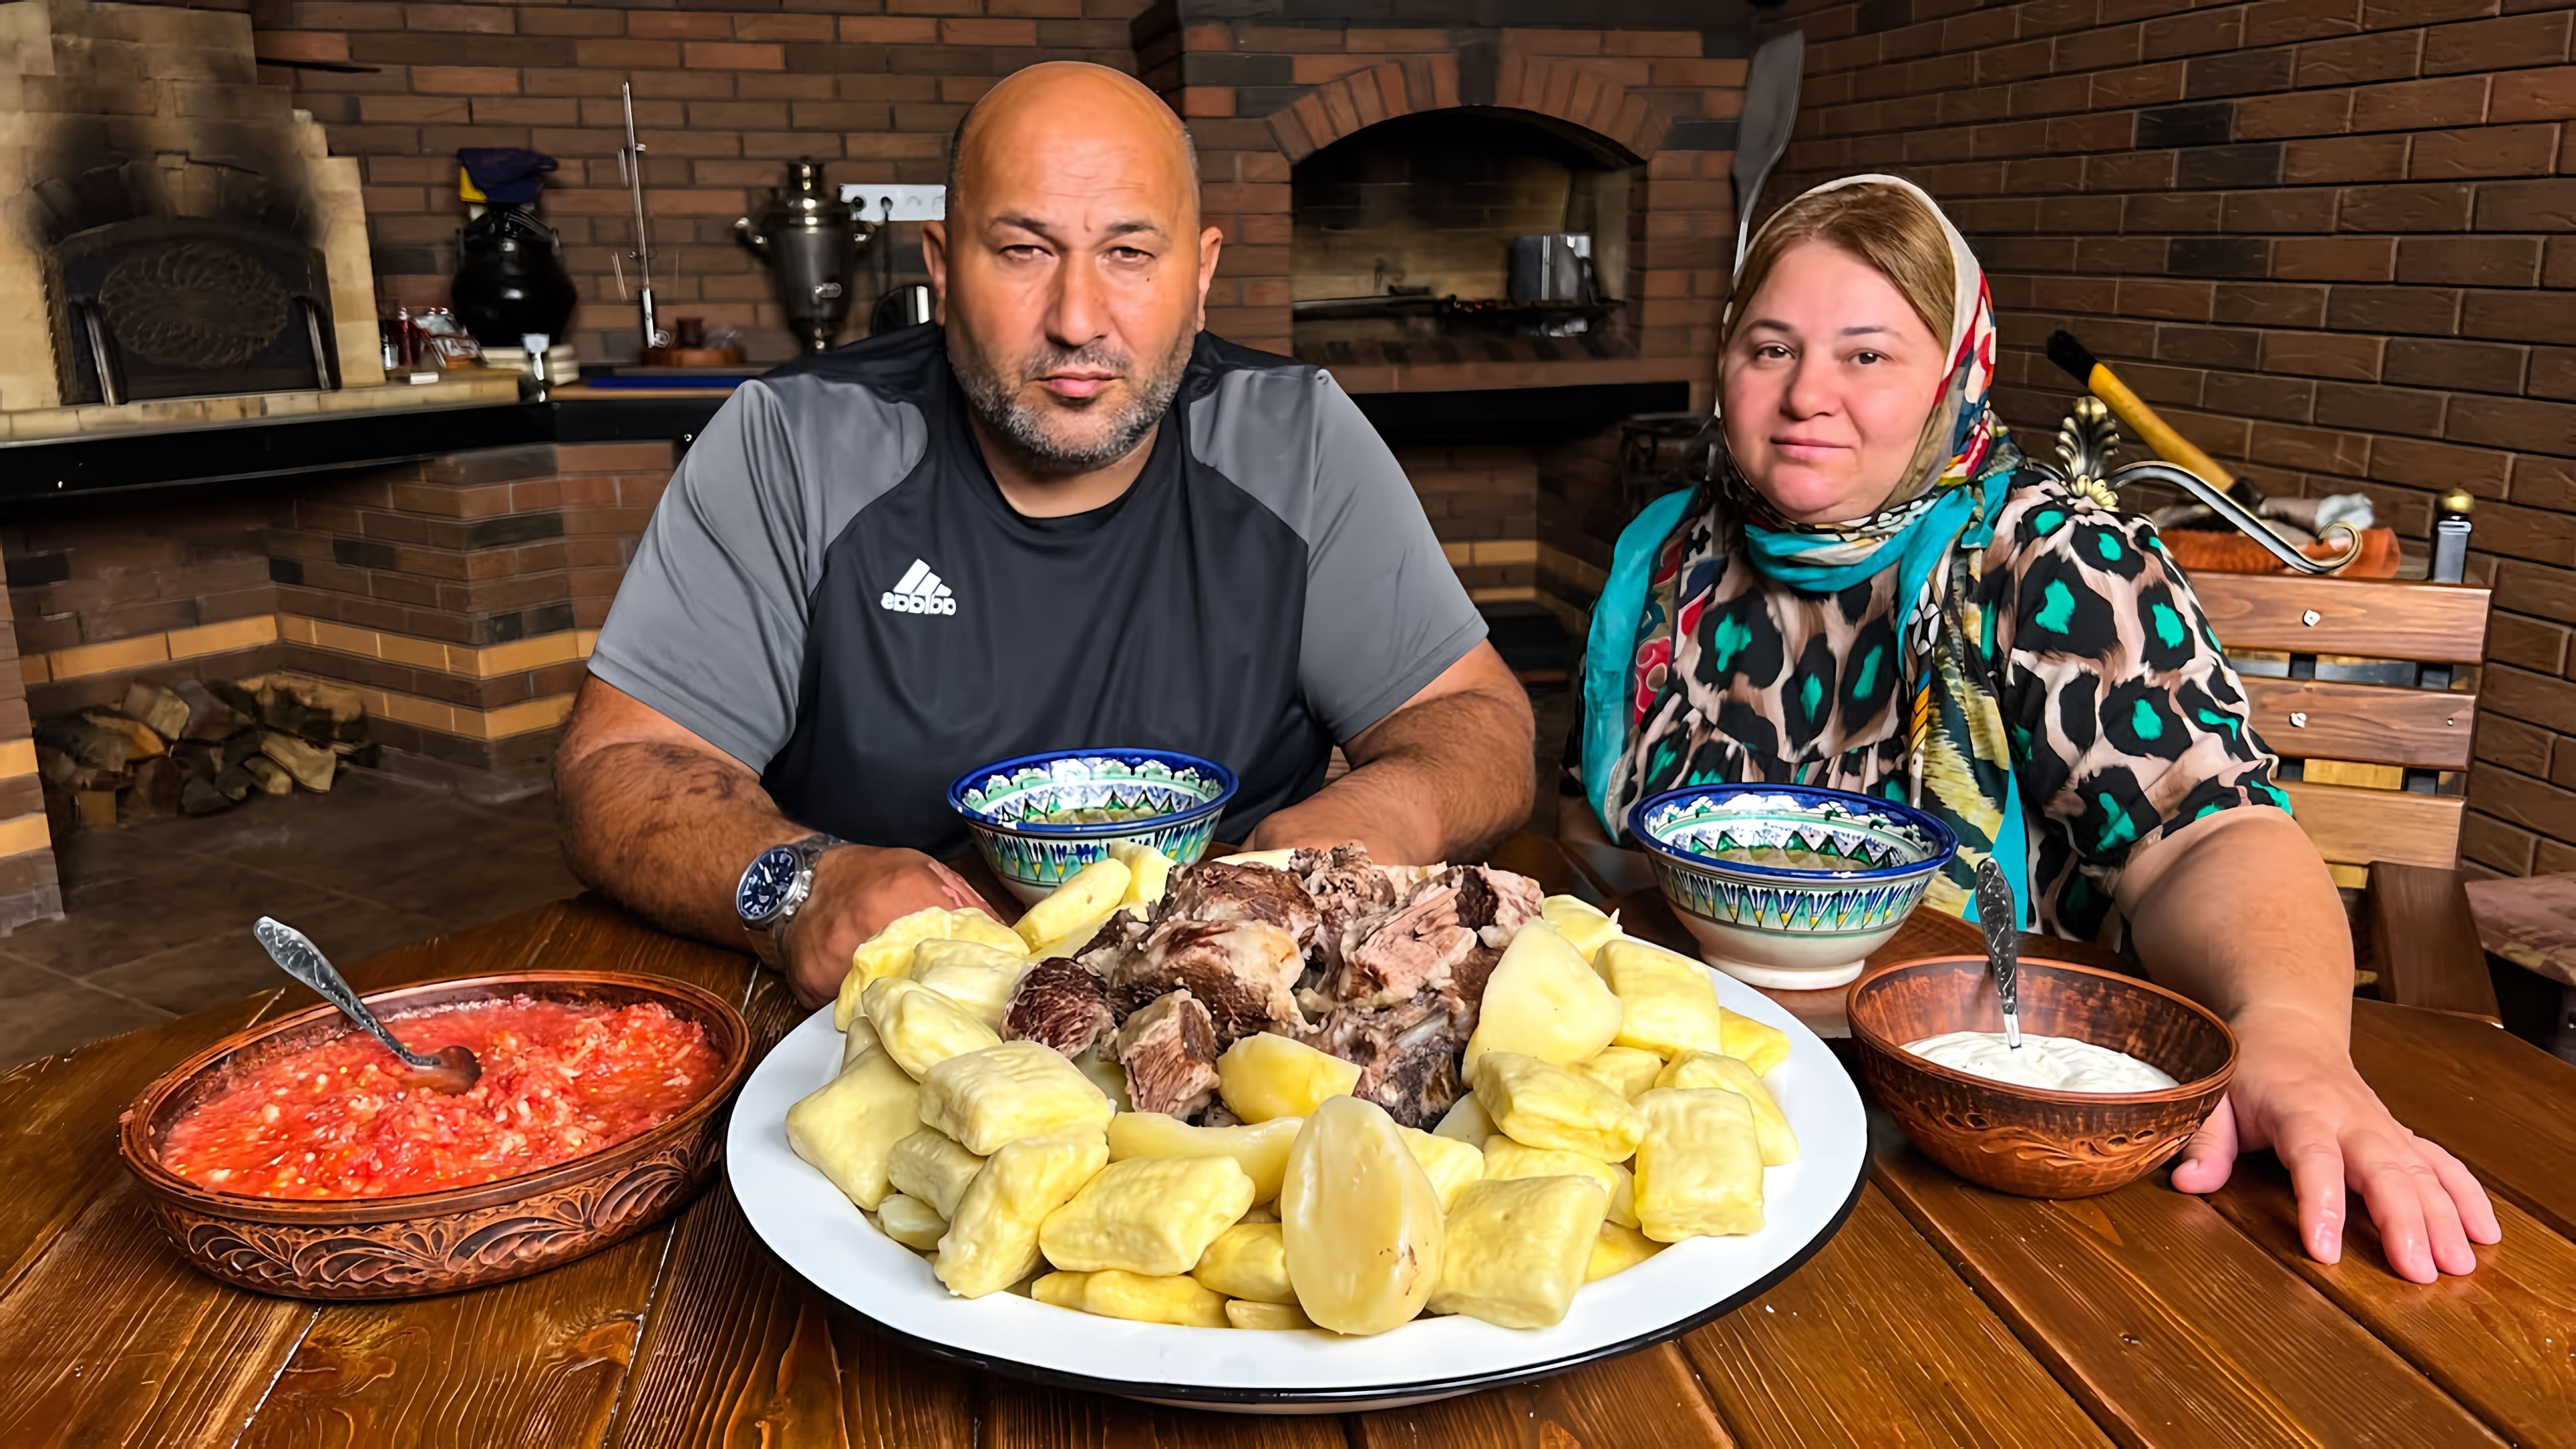 "100% рецепт хинкали: национальное блюдо" - это видео-ролик, который демонстрирует процесс приготовления хинкали, традиционного блюда грузинской кухни